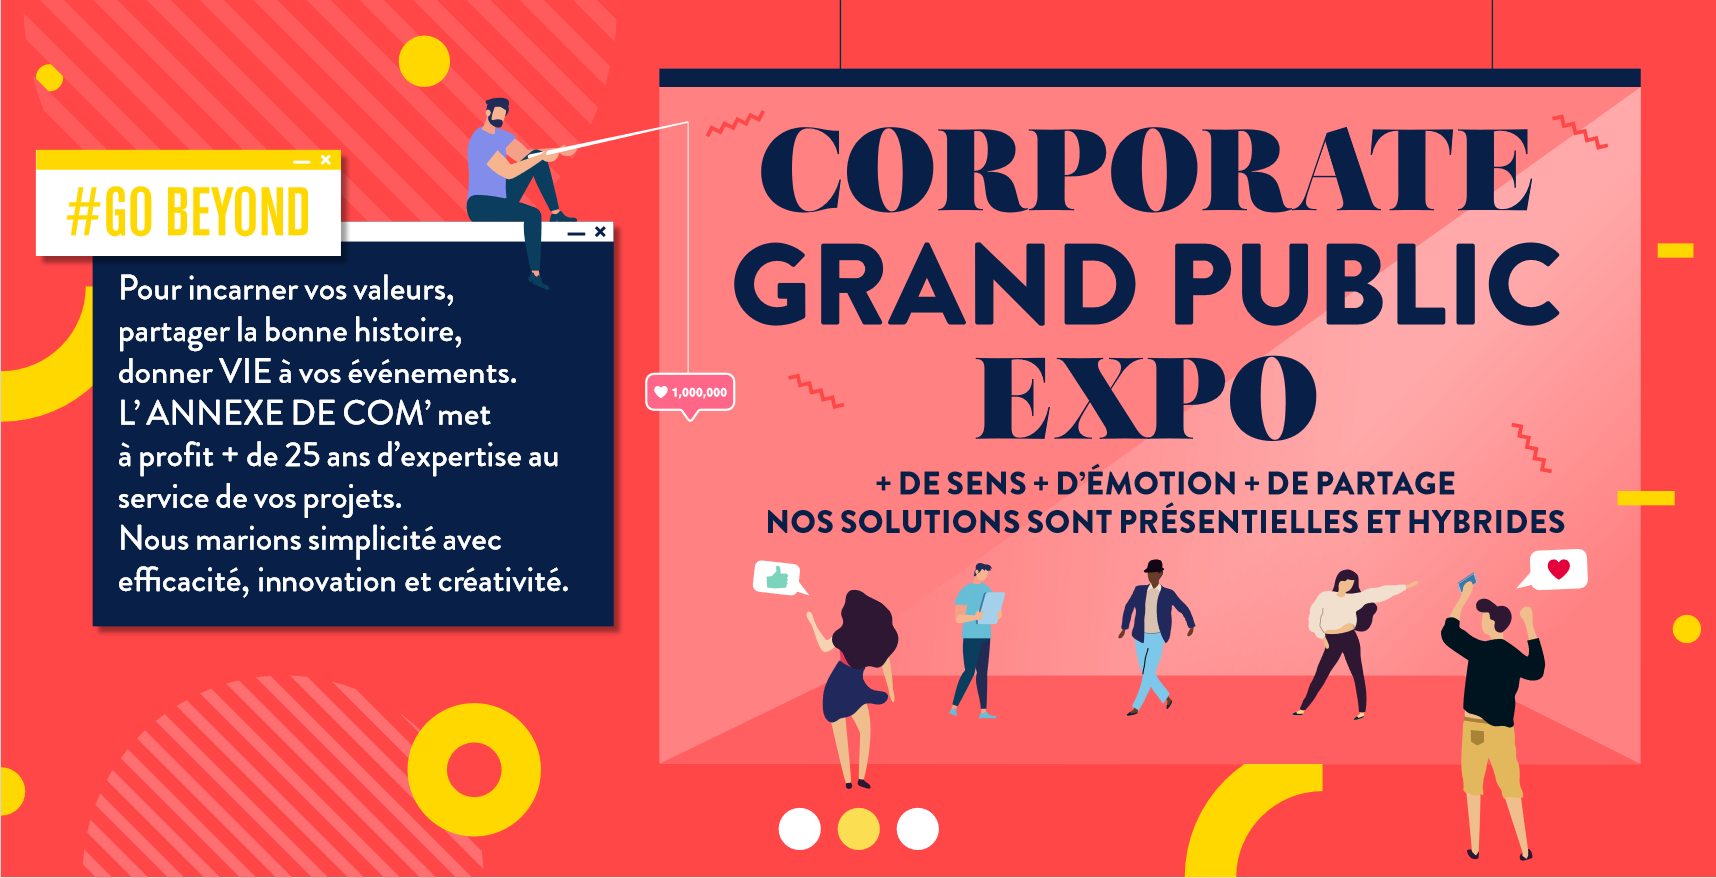 Corporate / Grand public / Expo